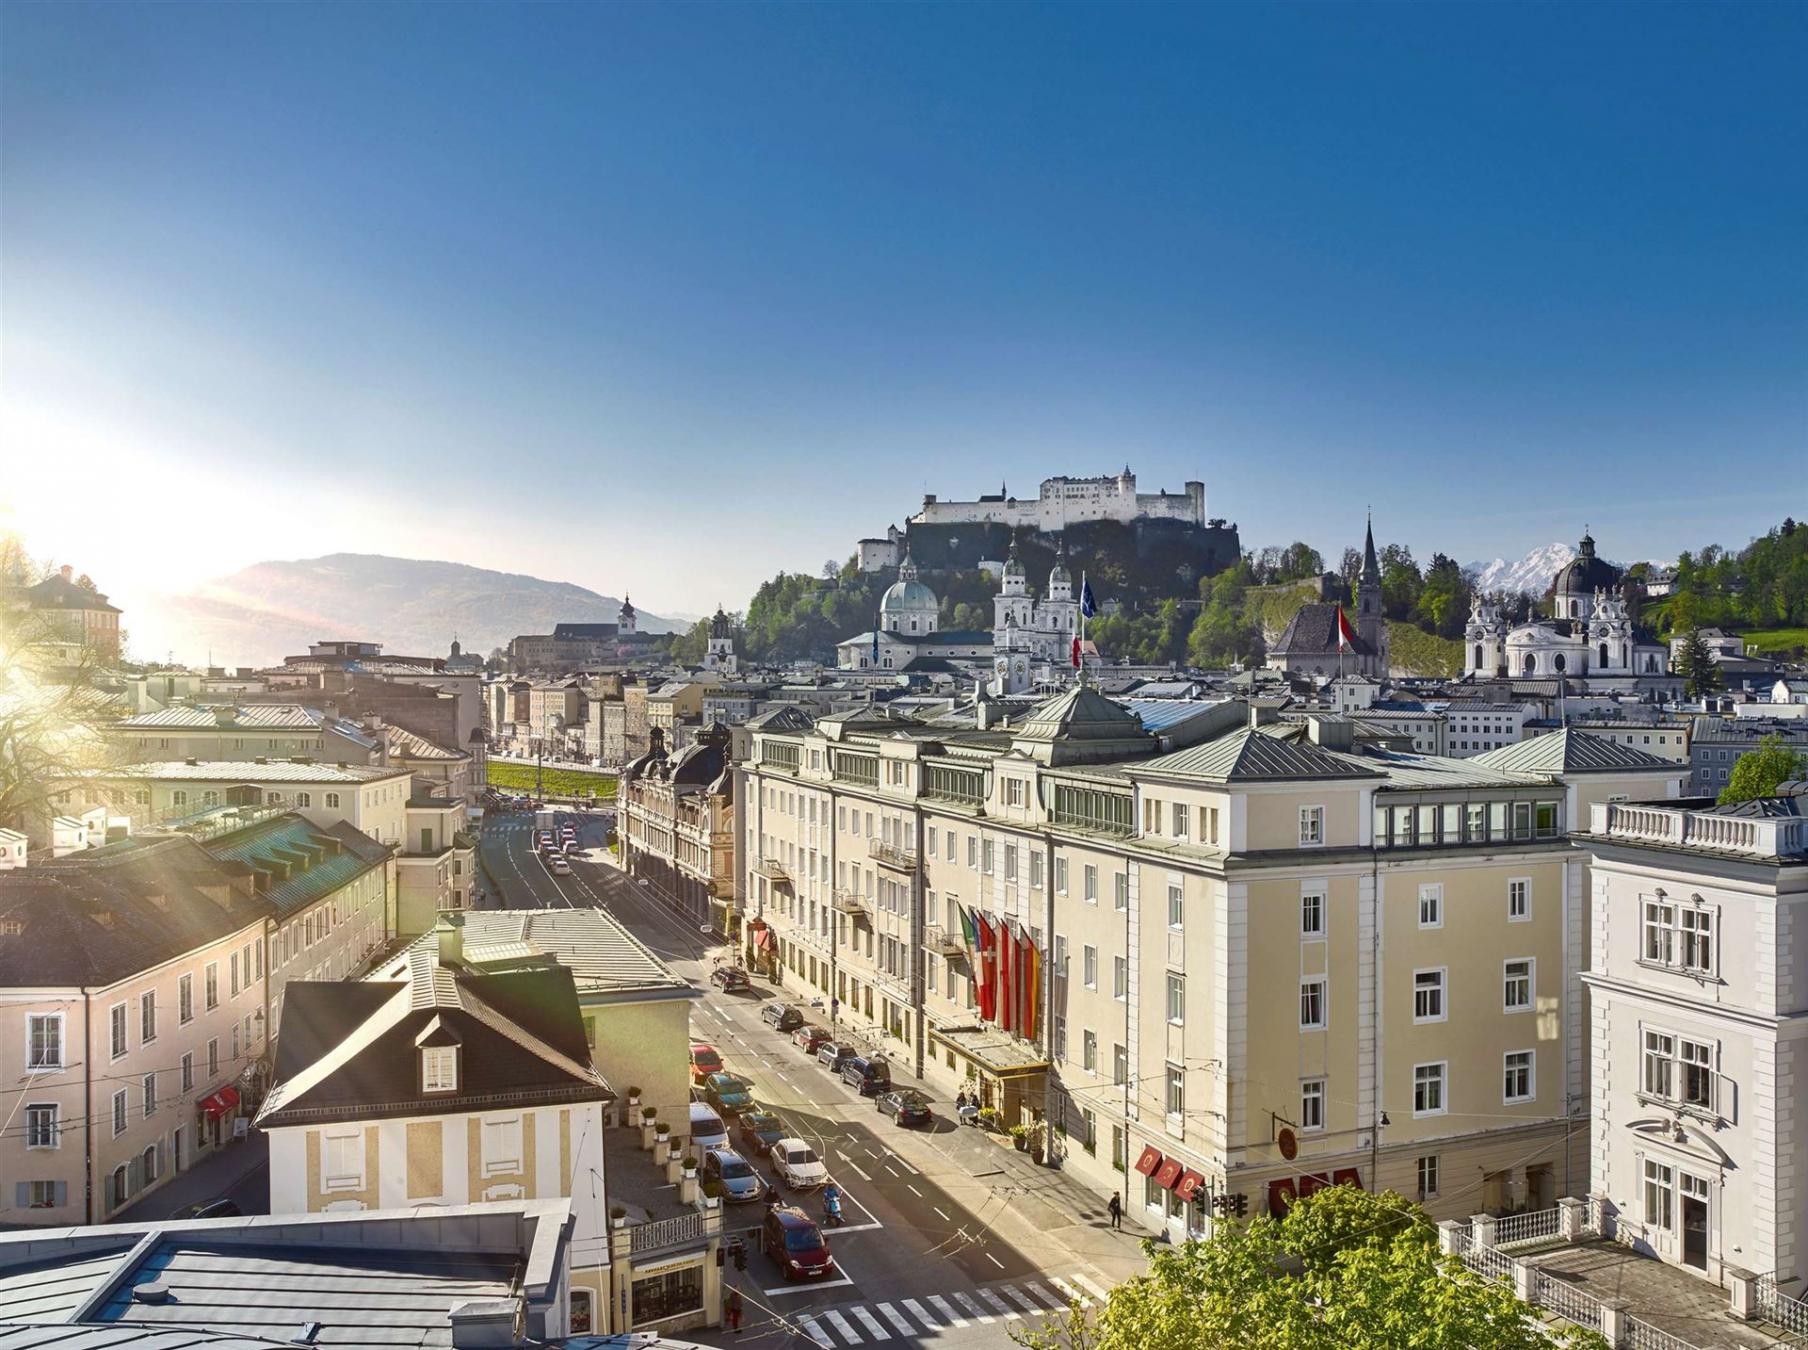 Hotel Sacher Salzburg luxe hotel deals